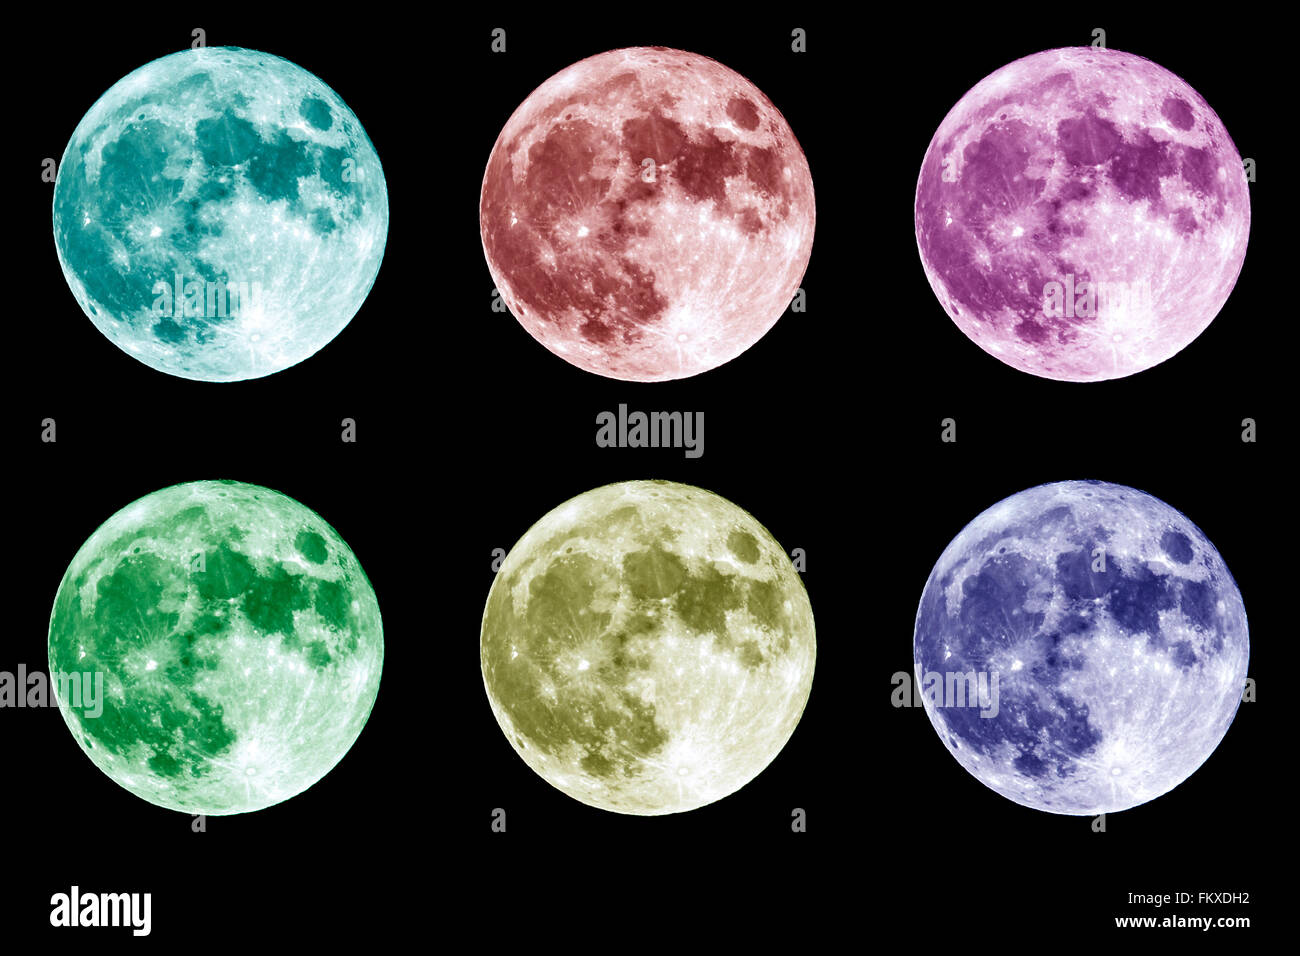 Перекрасил луну в миллионы разных цветов. Луна разных цветов. Разные цвета Луны. Цветная Луна. Оттенки Луны.